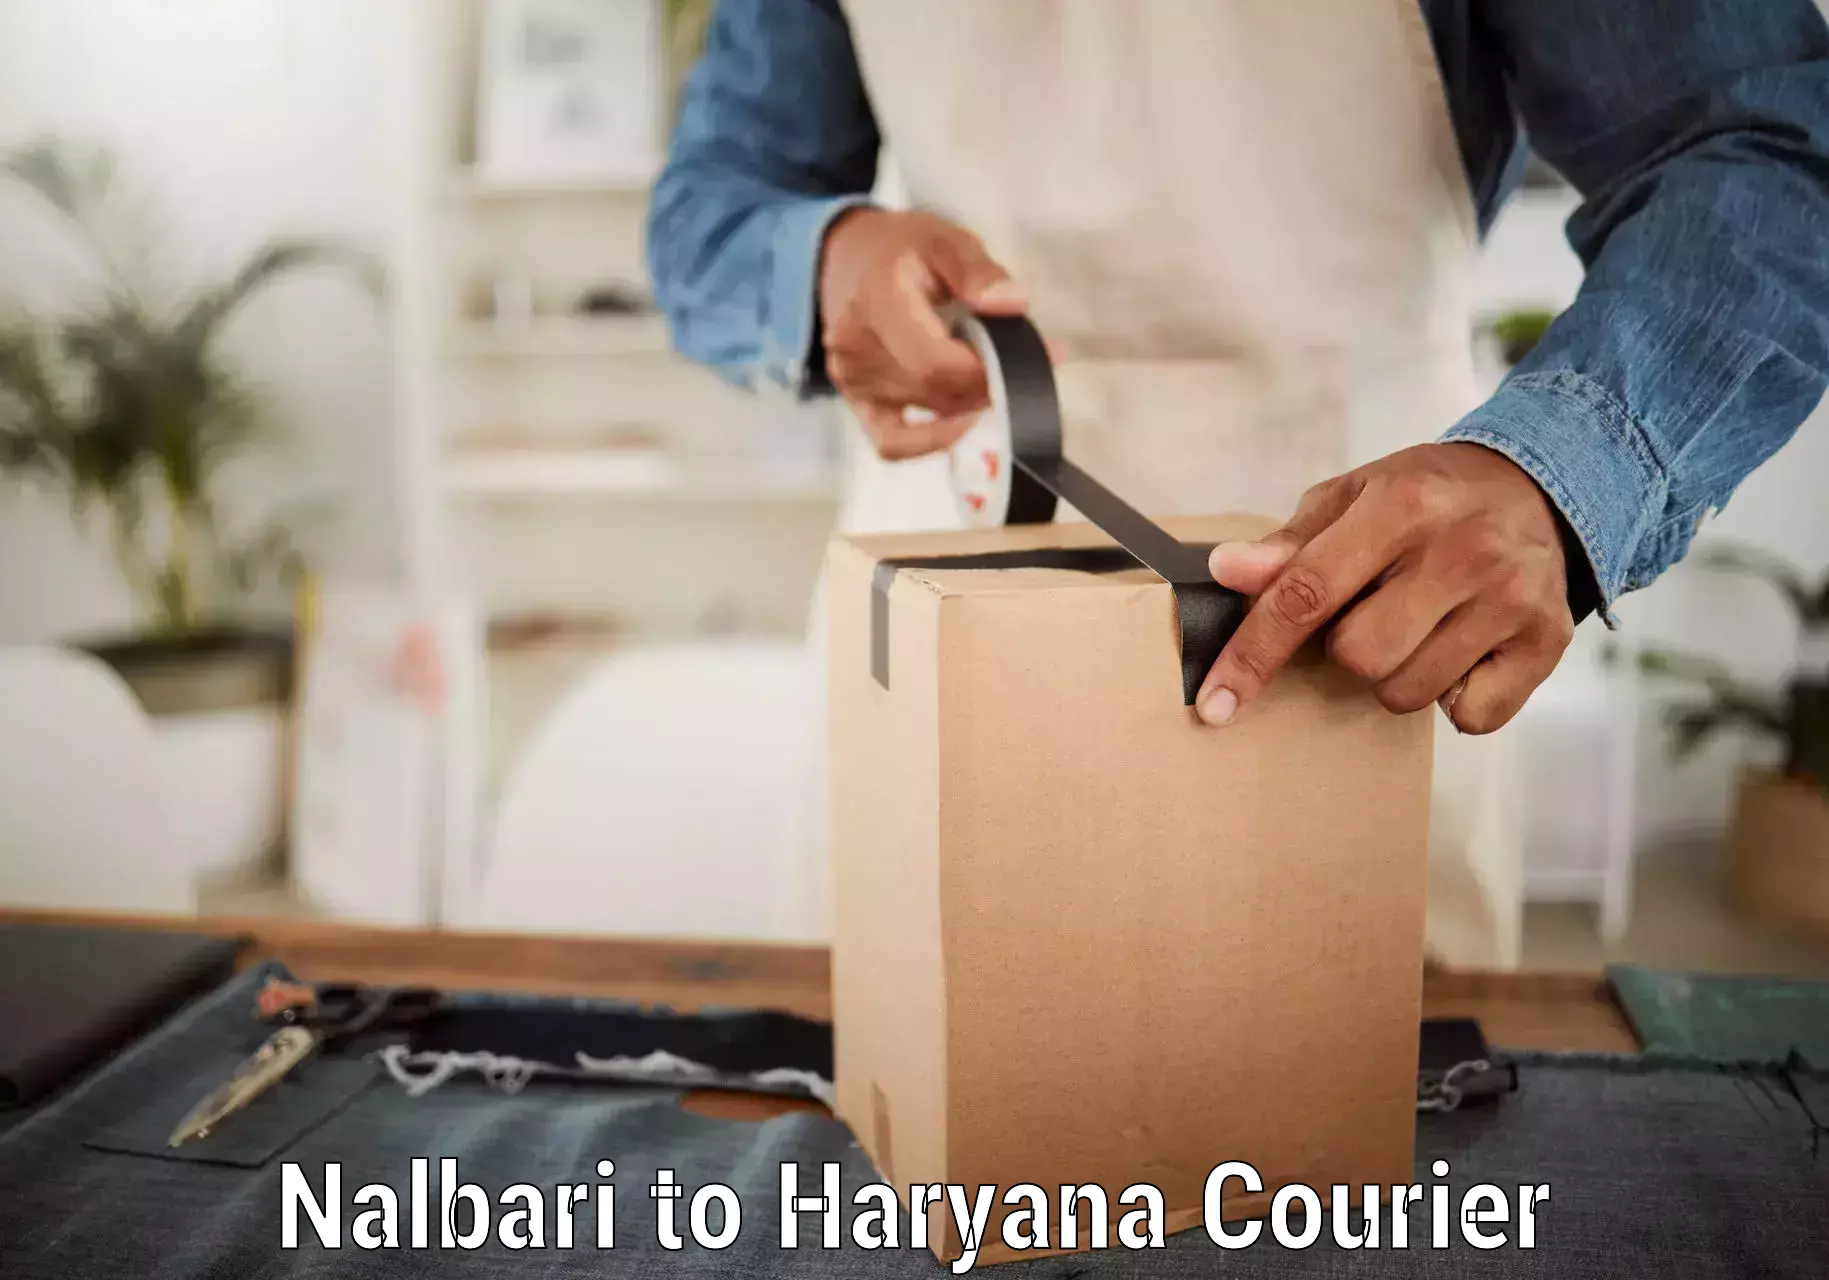 Courier service comparison in Nalbari to Loharu